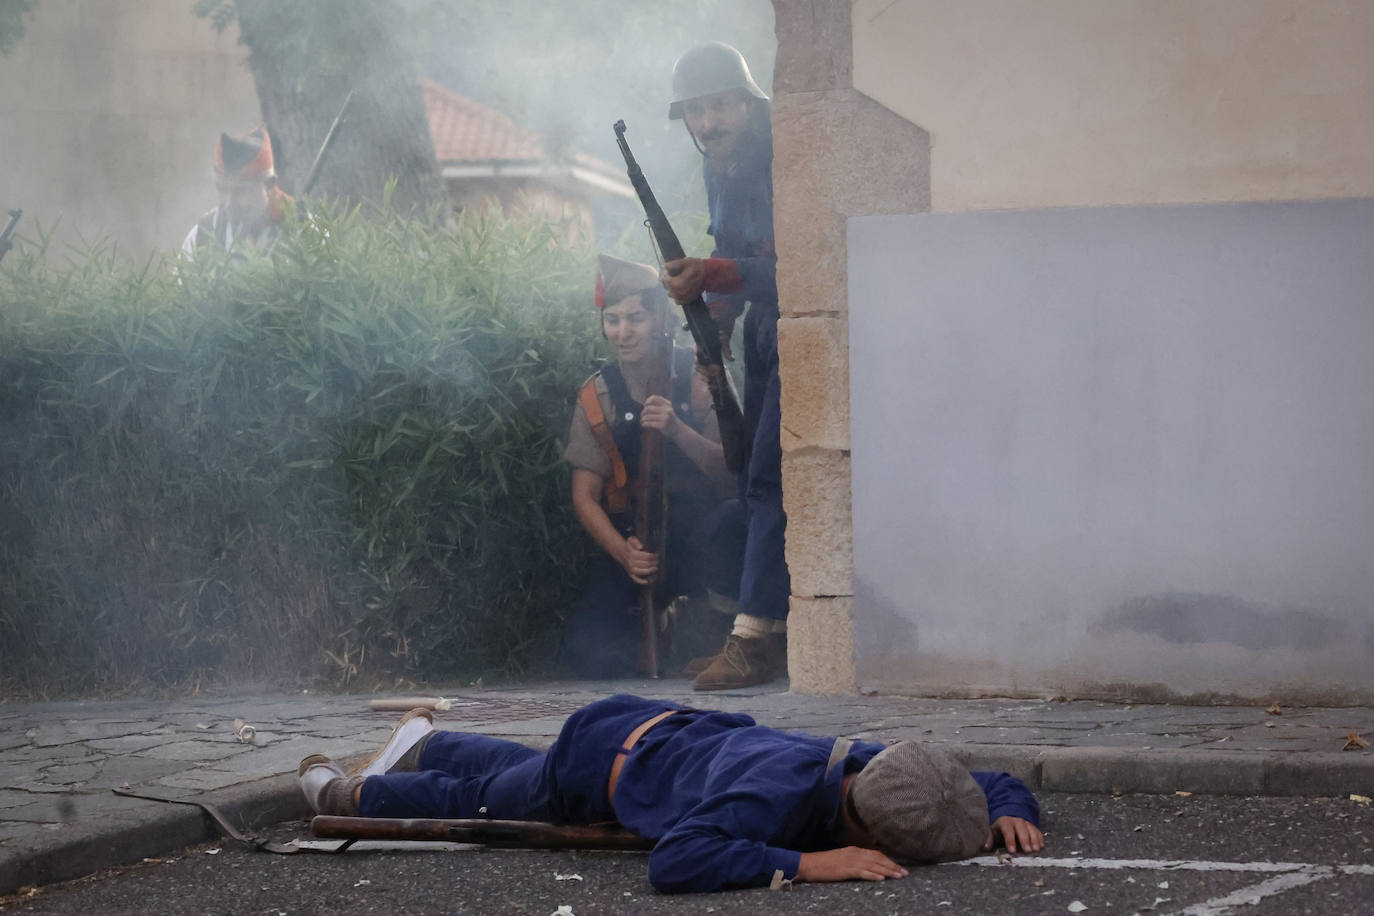 Fotos: El asalto al cuertel de Simancas, en vivo